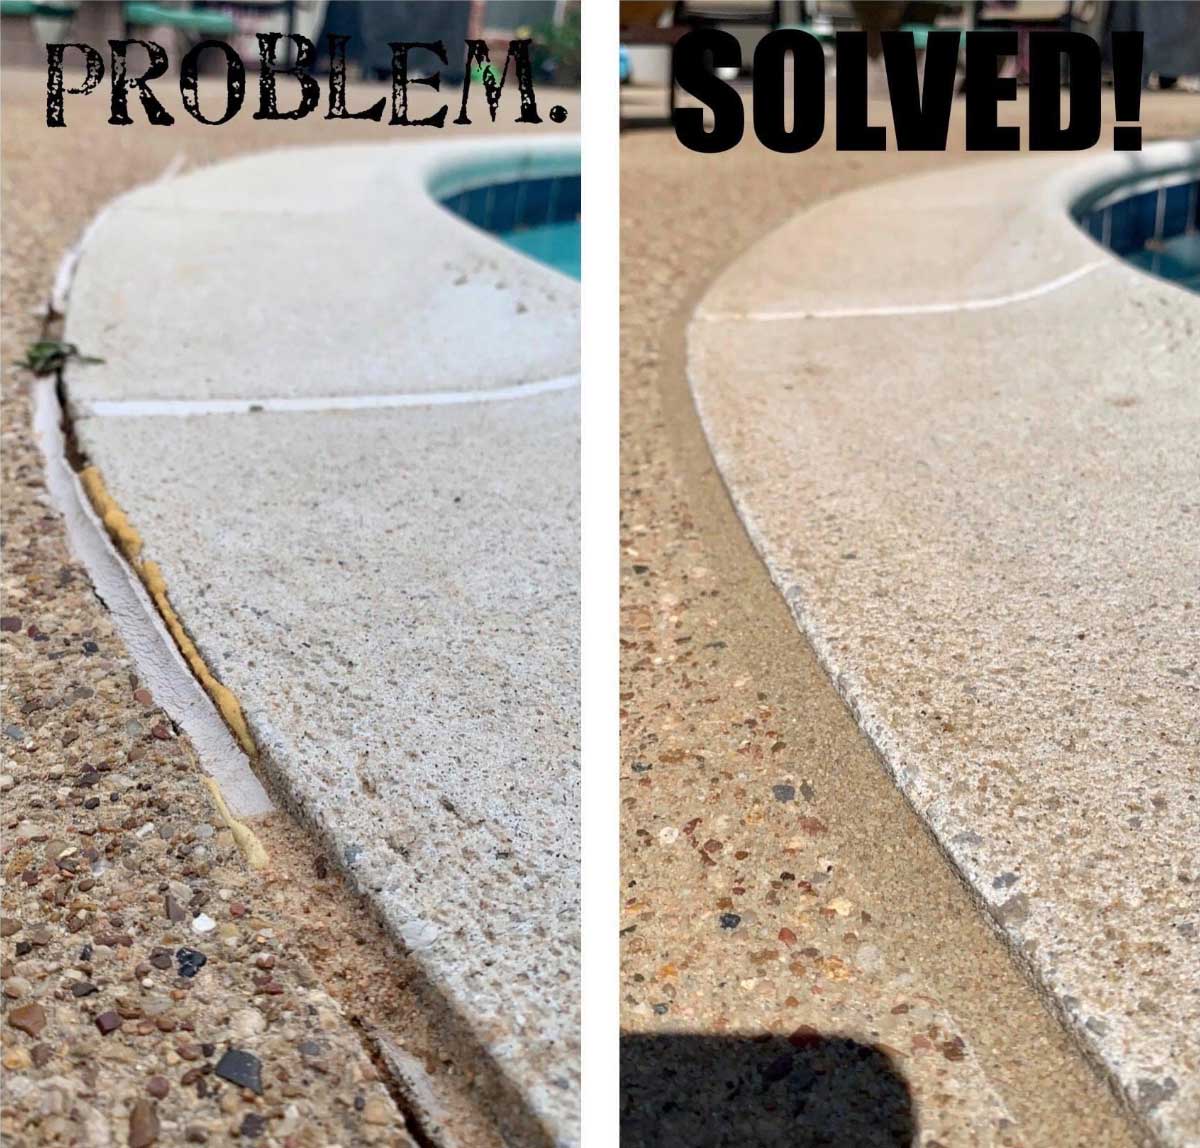 MM-Problem-Solved-1